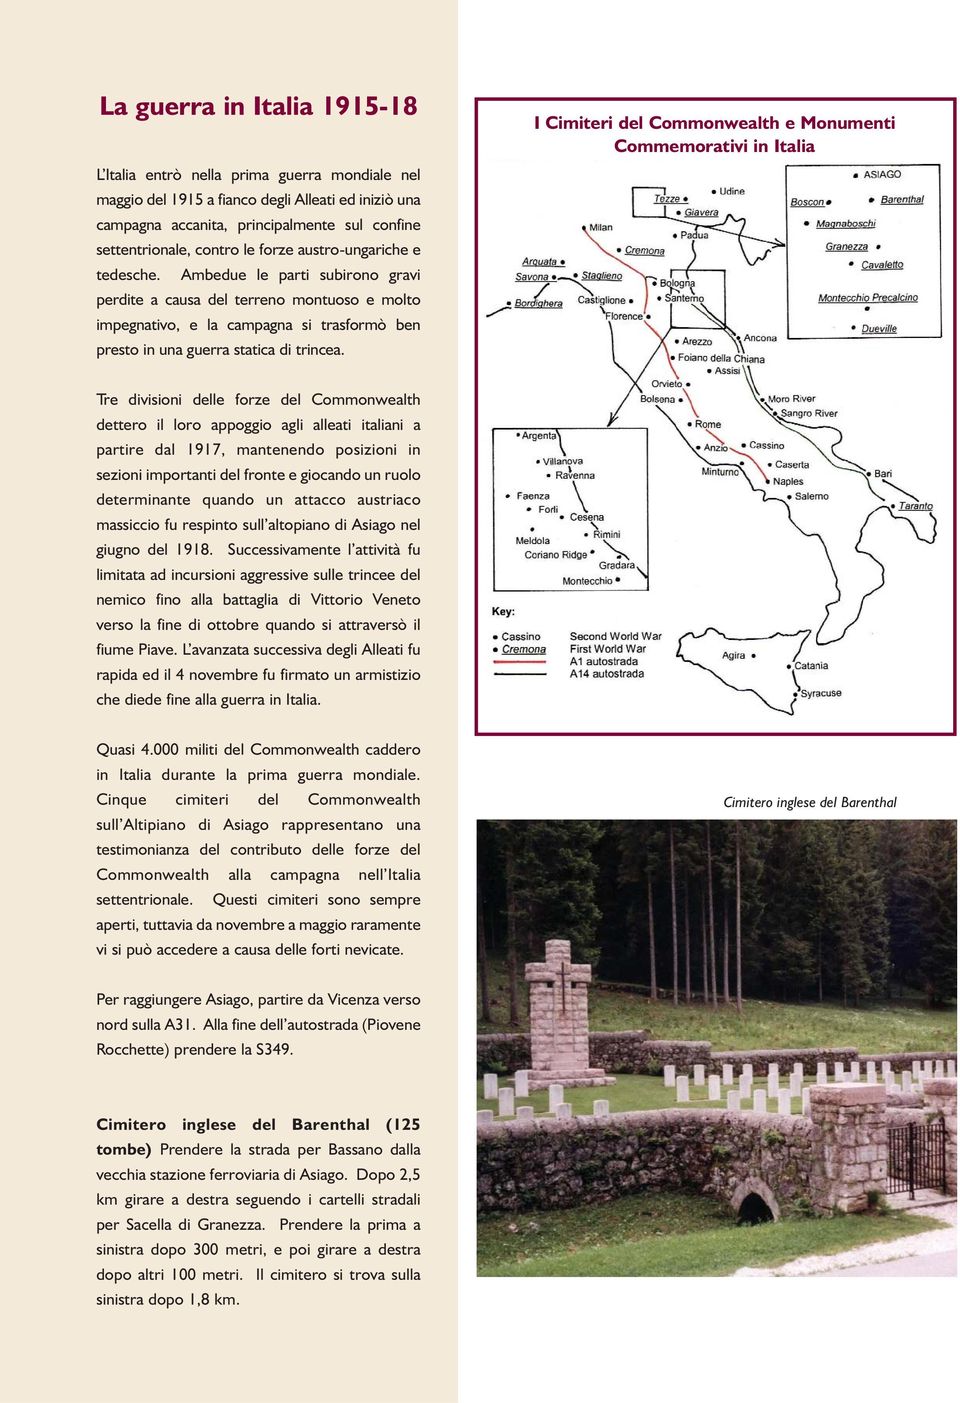 I Cimiteri del Commonwealth e Monumenti Commemorativi in Italia Tre divisioni delle forze del Commonwealth dettero il loro appoggio agli alleati italiani a partire dal 1917, mantenendo posizioni in